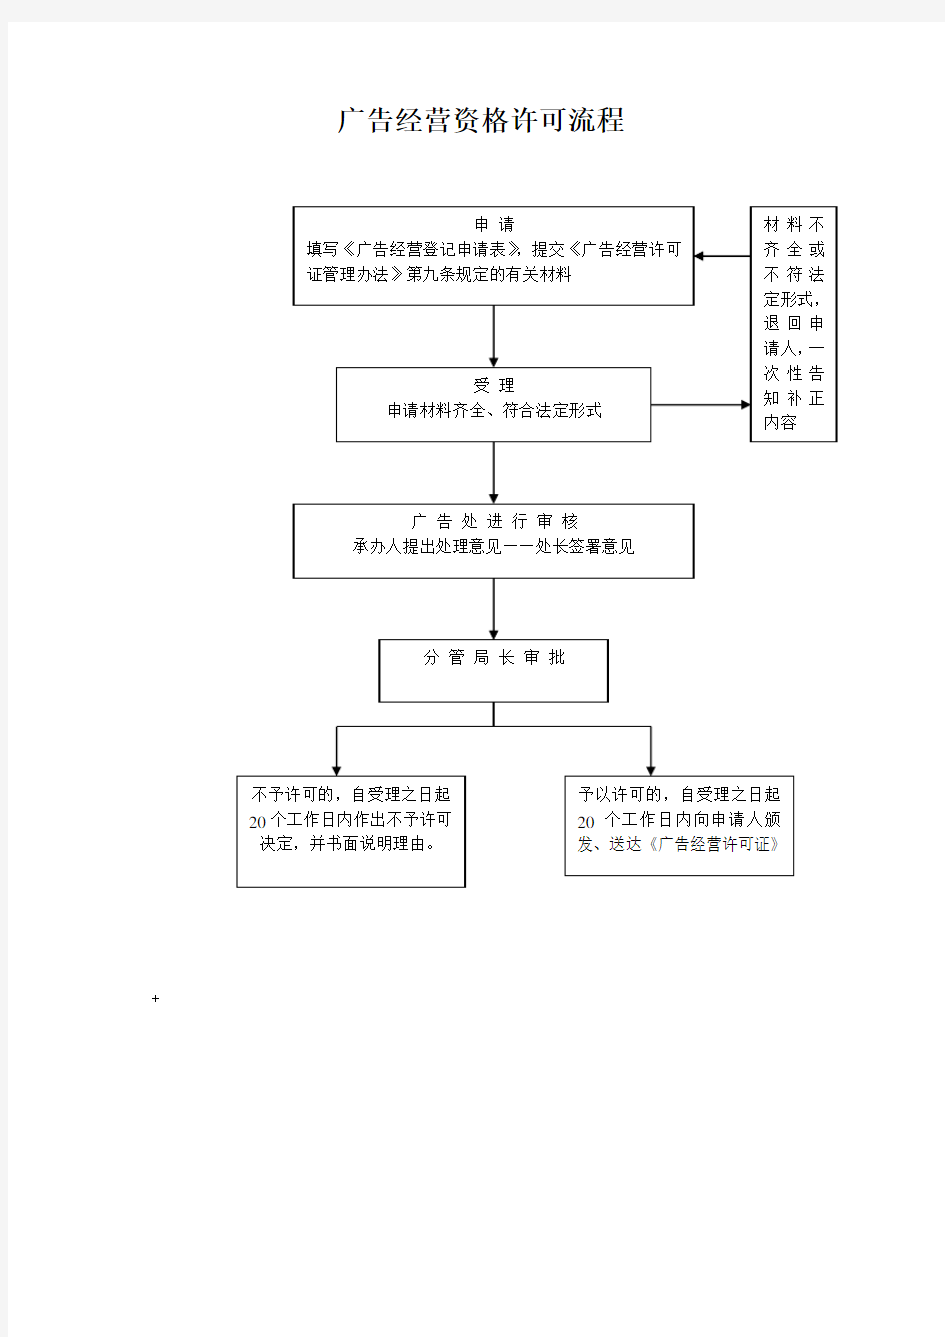 某市工商行政管理系统行政执法流程图(doc 68页)